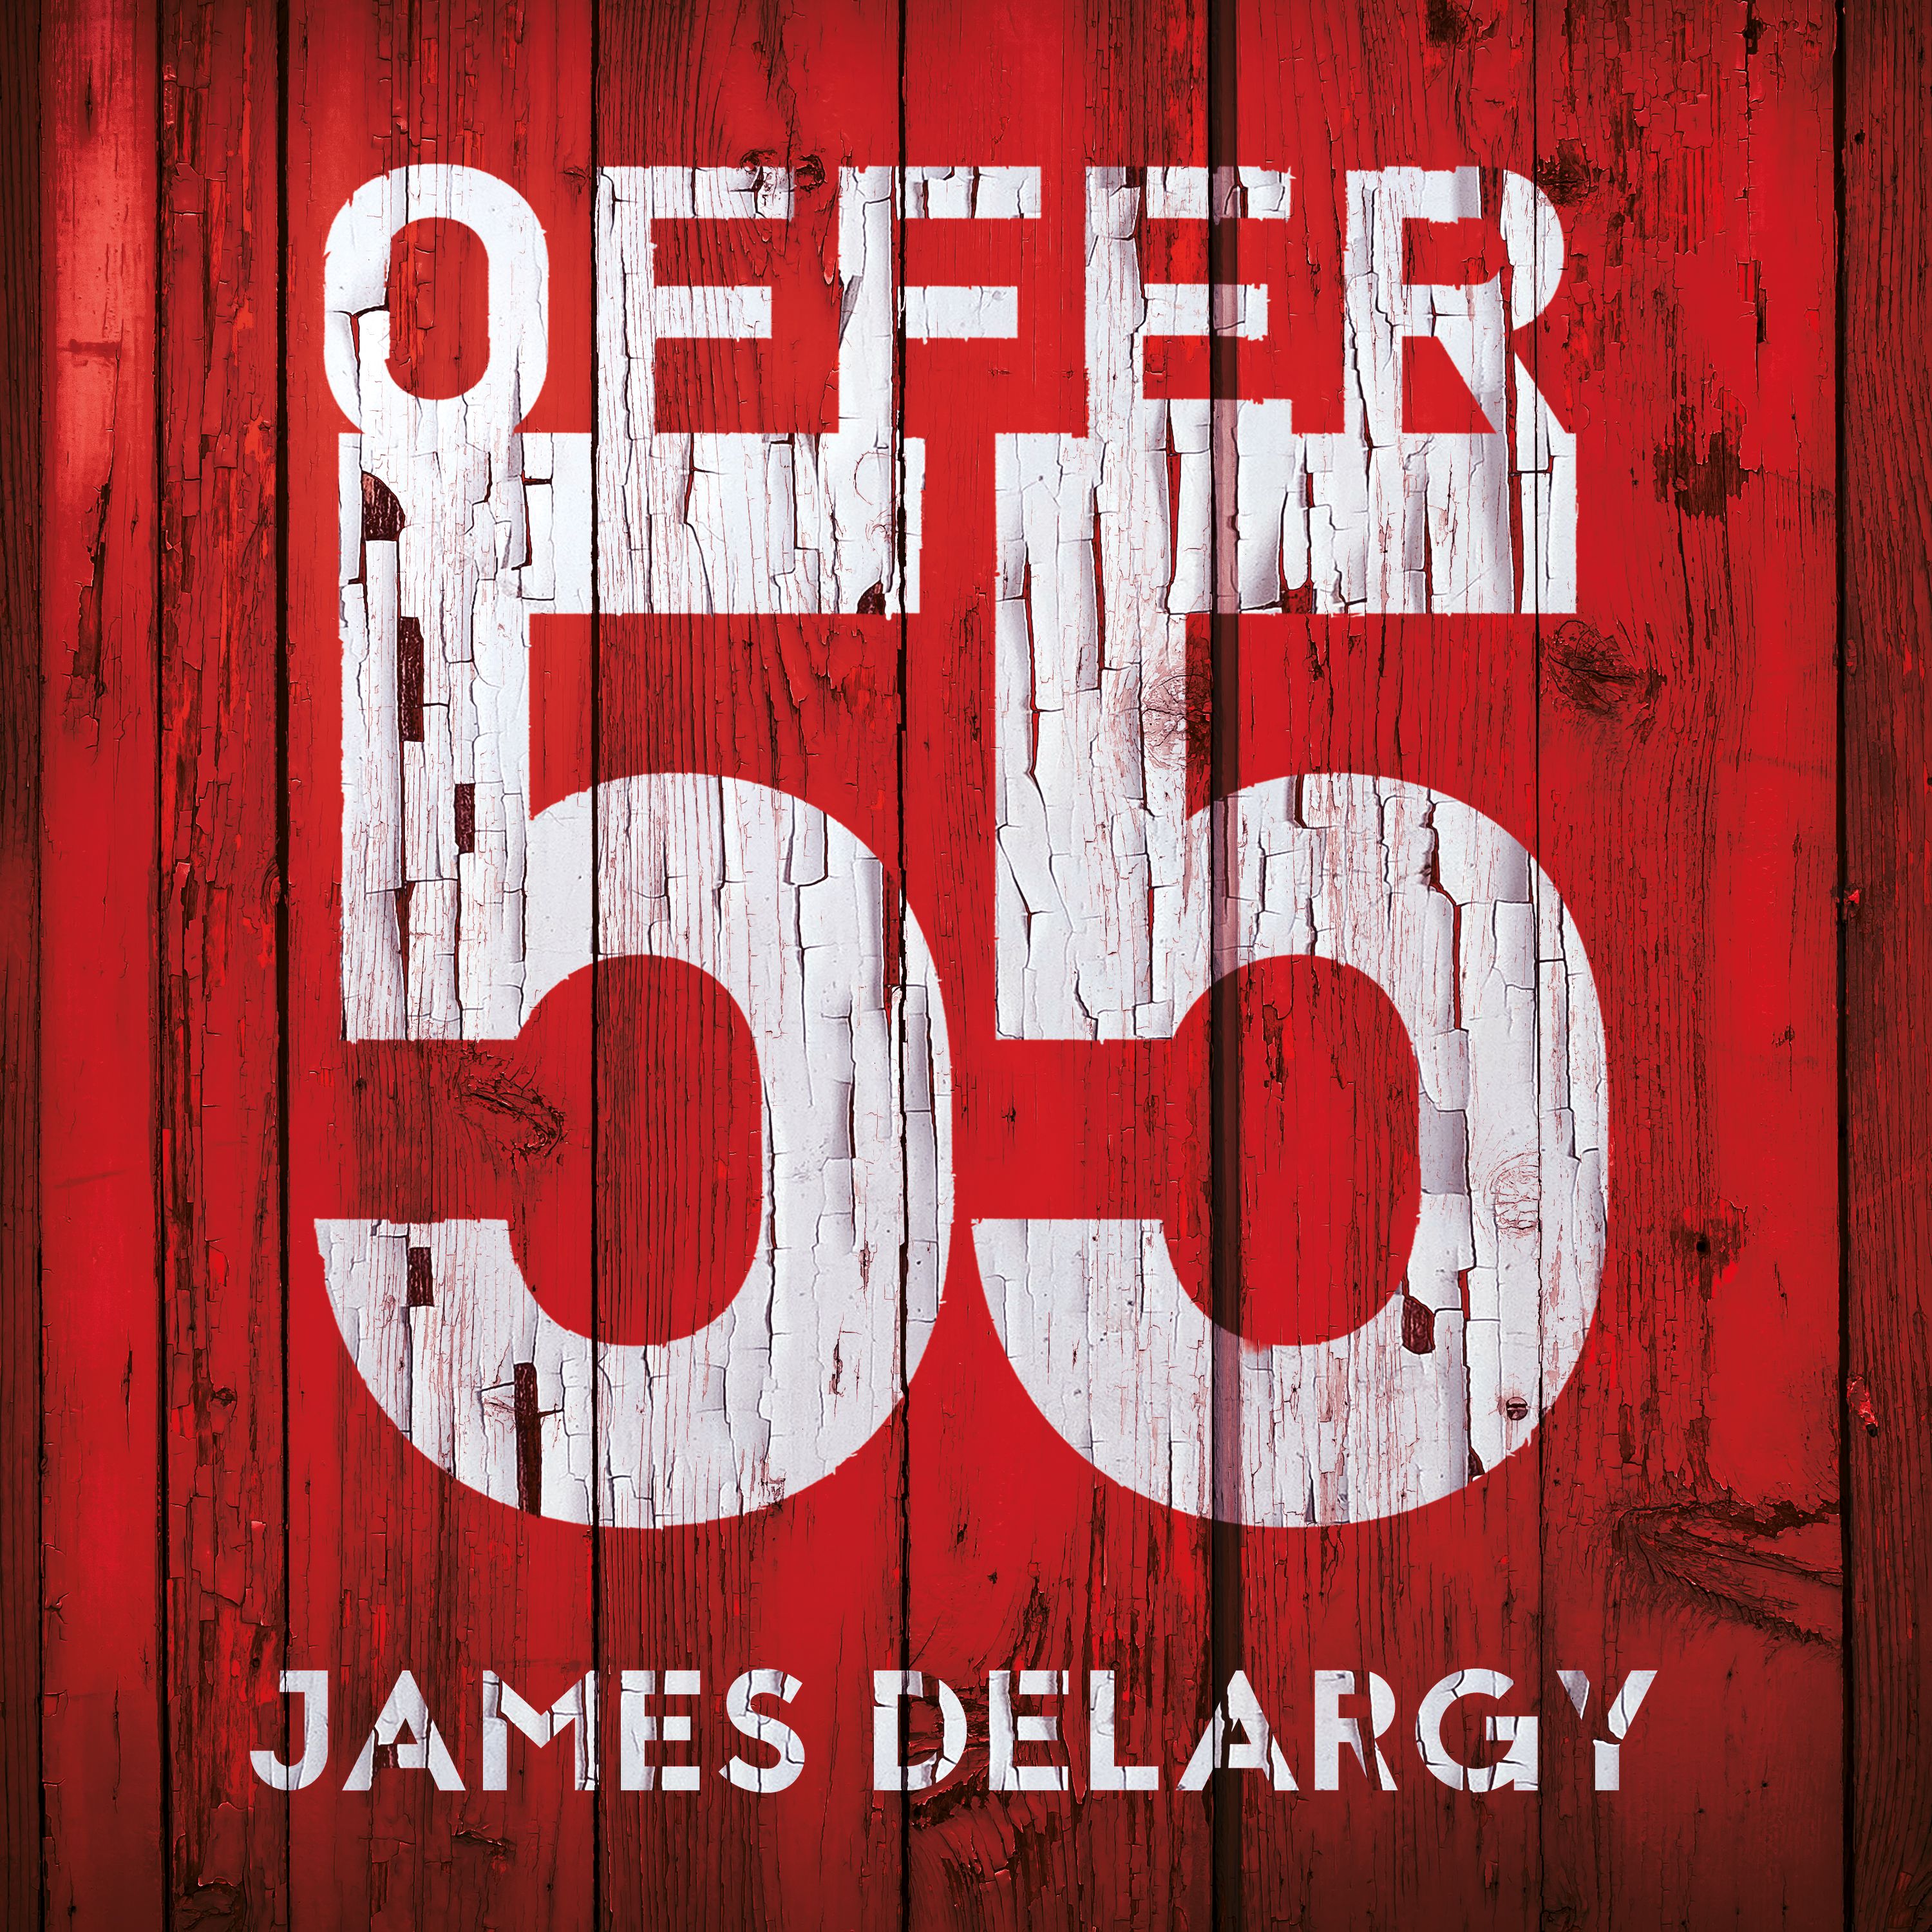 Offer 55, lydbog af James Delargy